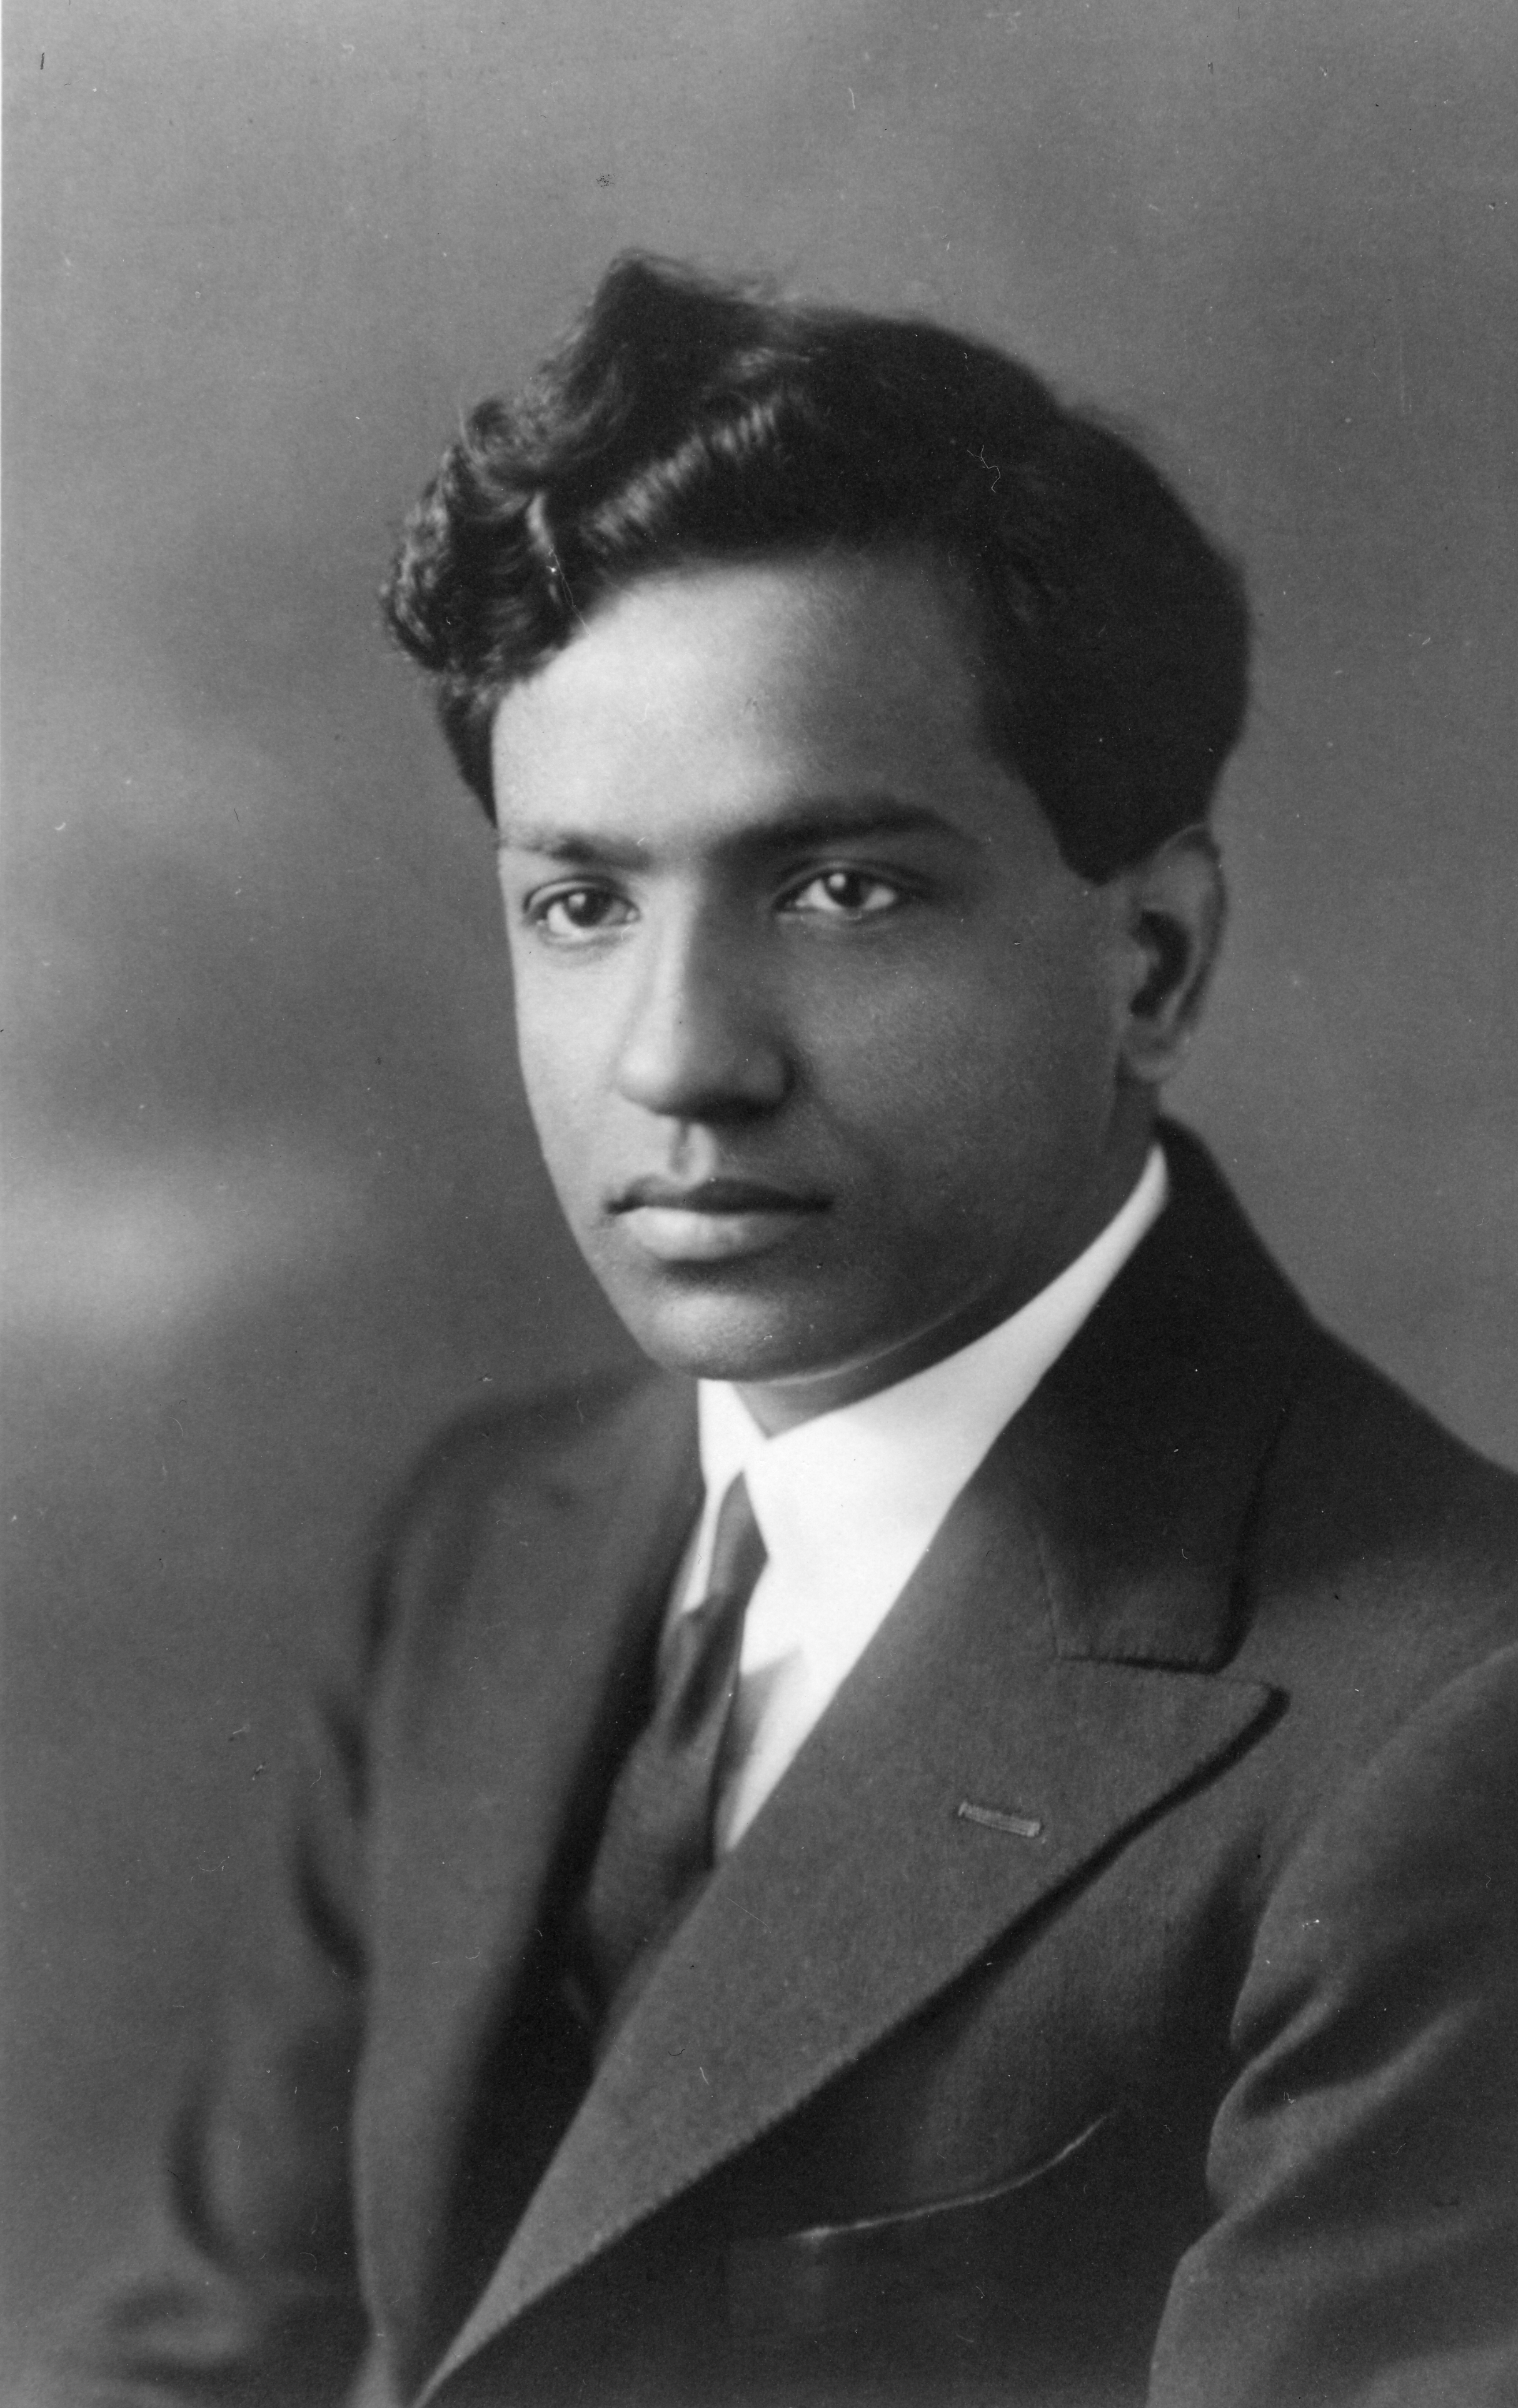 ritratto del giovane Chandra, immagine da AIP Emilio Segrè Visual Archives, gift of Subrahmanyan Chandrasekhar